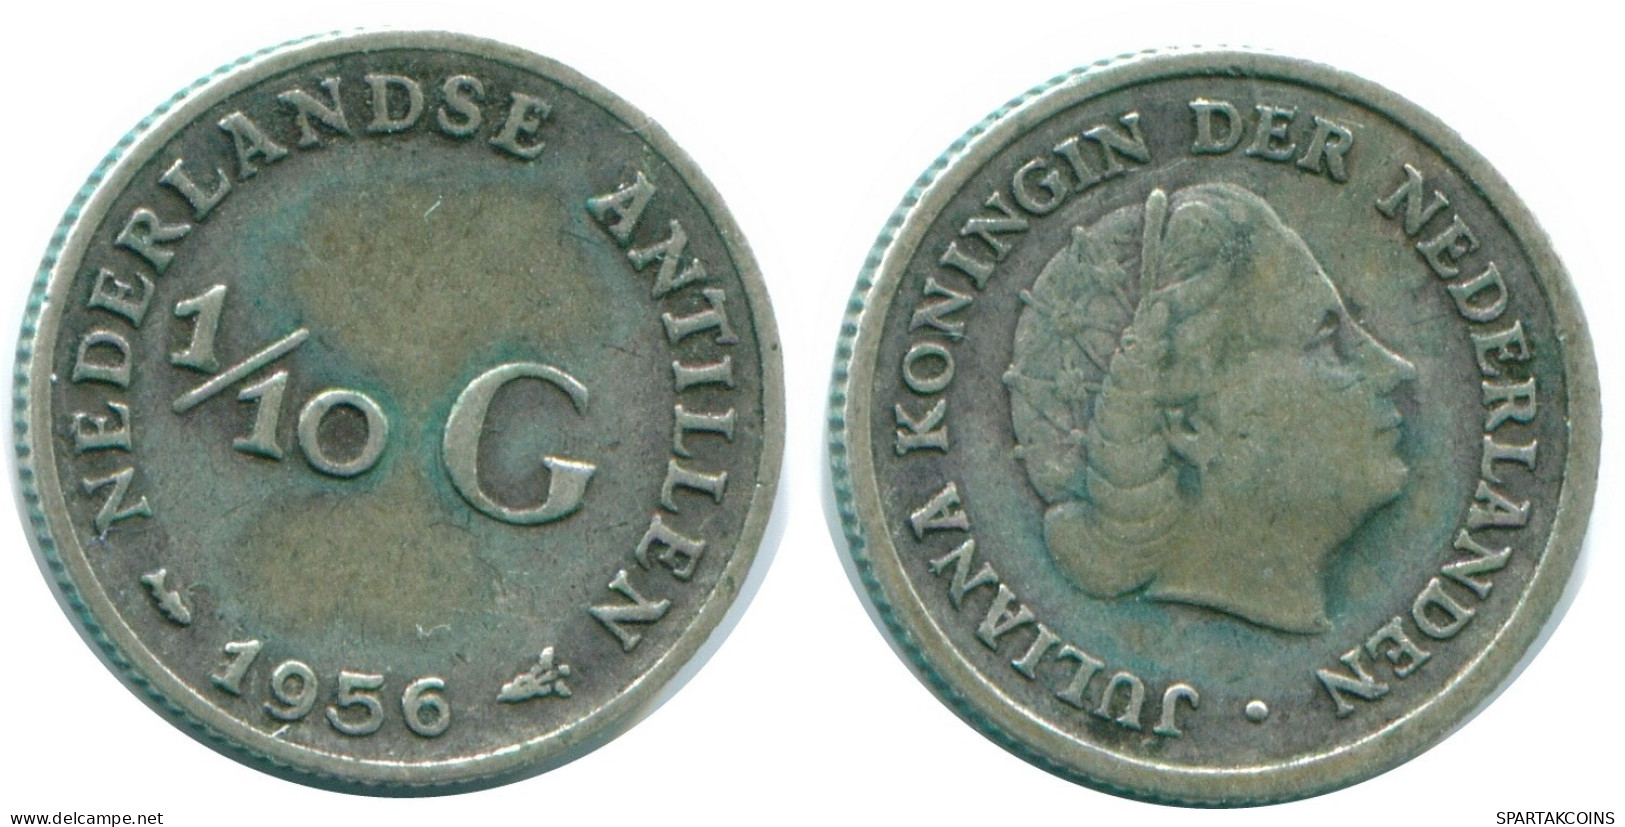 1/10 GULDEN 1956 NIEDERLÄNDISCHE ANTILLEN SILBER Koloniale Münze #NL12115.3.D.A - Niederländische Antillen